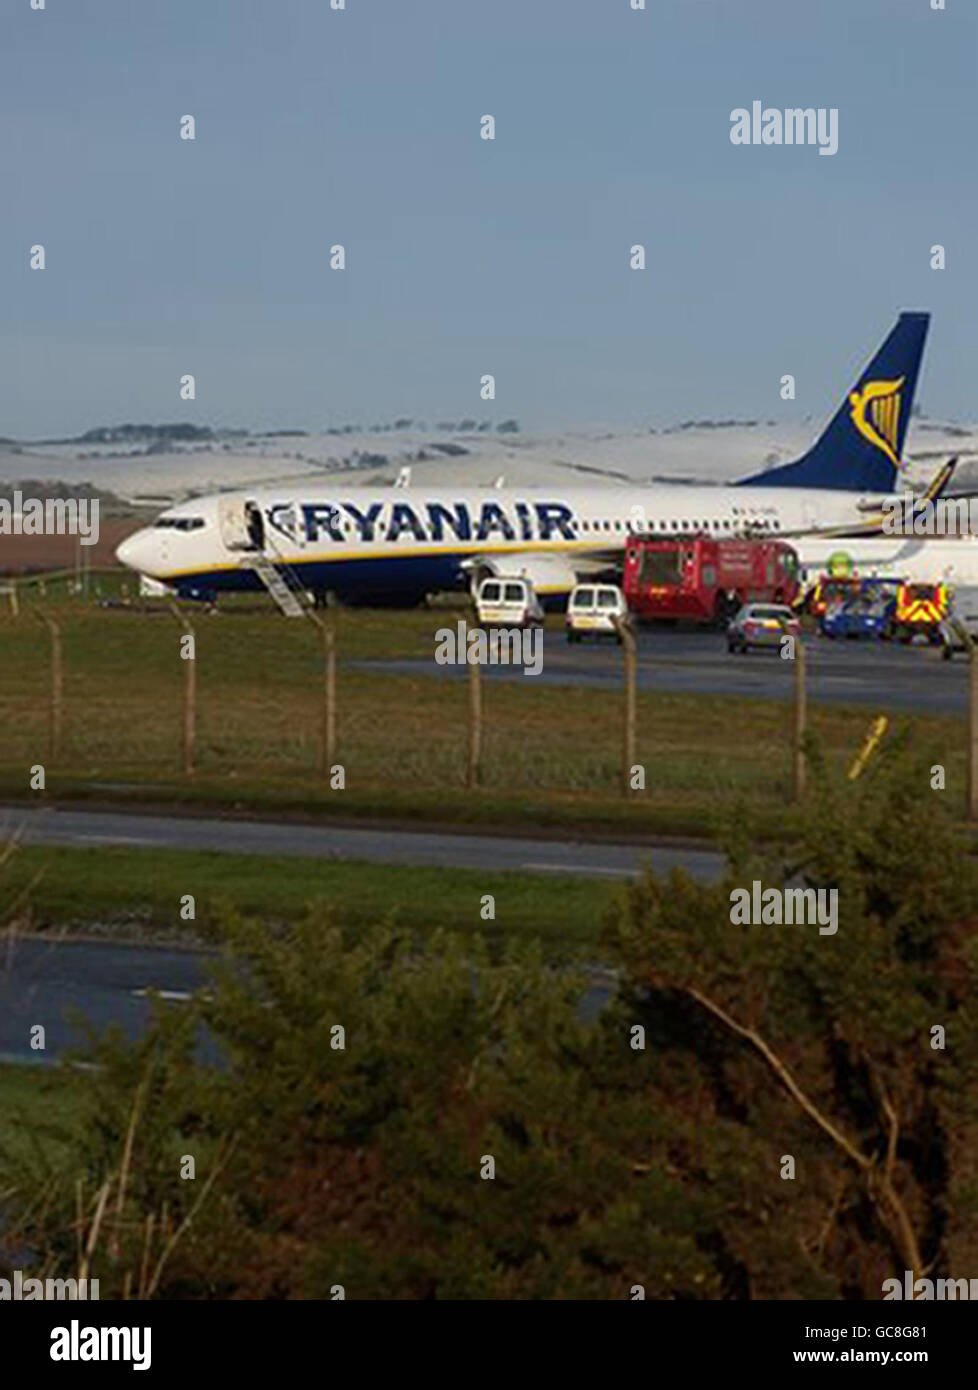 Un avion Ryanair transportant 129 personnes au repos à 30 mètres de la clôture périphérique de l'aéroport de Glasgow Prestwick après avoir débarradé de la piste à 9:00 ce matin. Banque D'Images